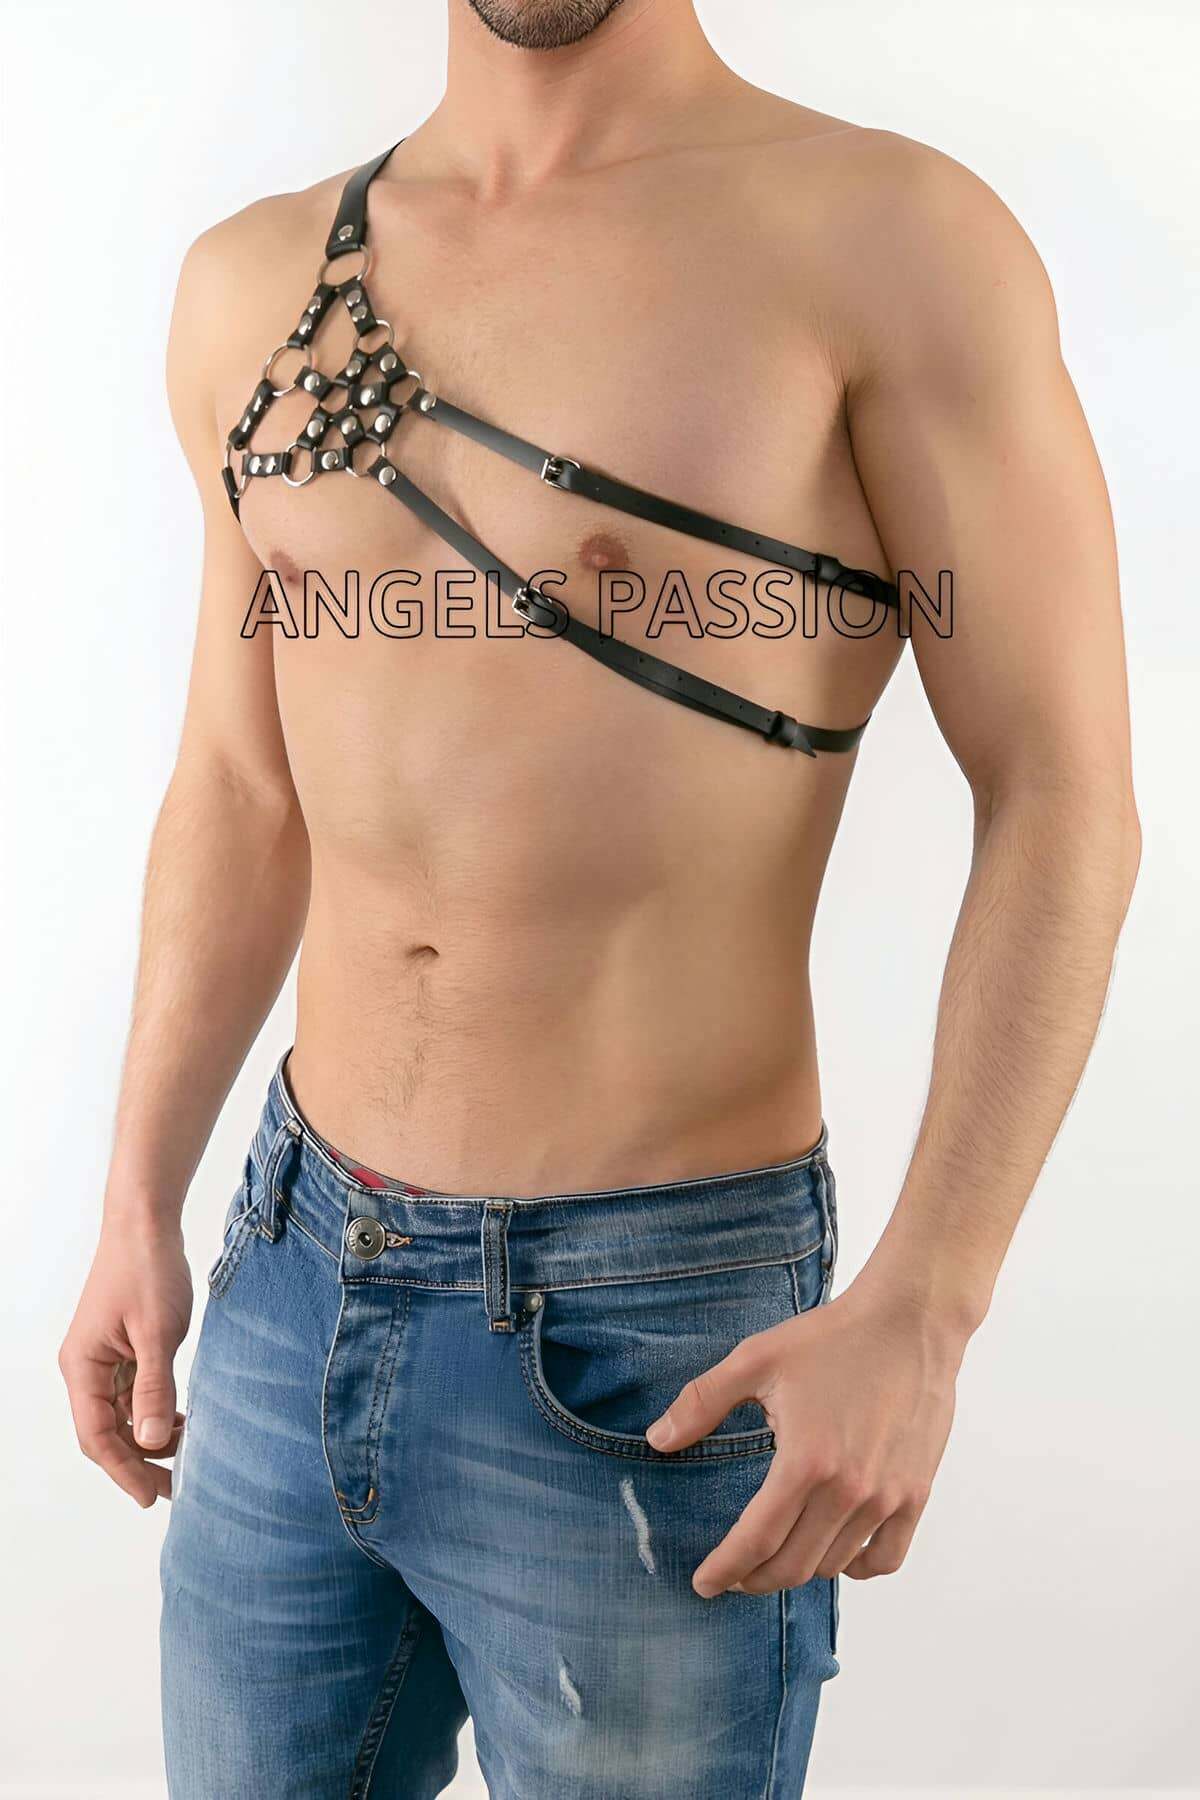 CLZ41 Erkek Tek Omuz Deri HarnessErkek Fantazi İç GiyimErkek Deri Erotik İç Giyim - Ürün Rengi:Siyah